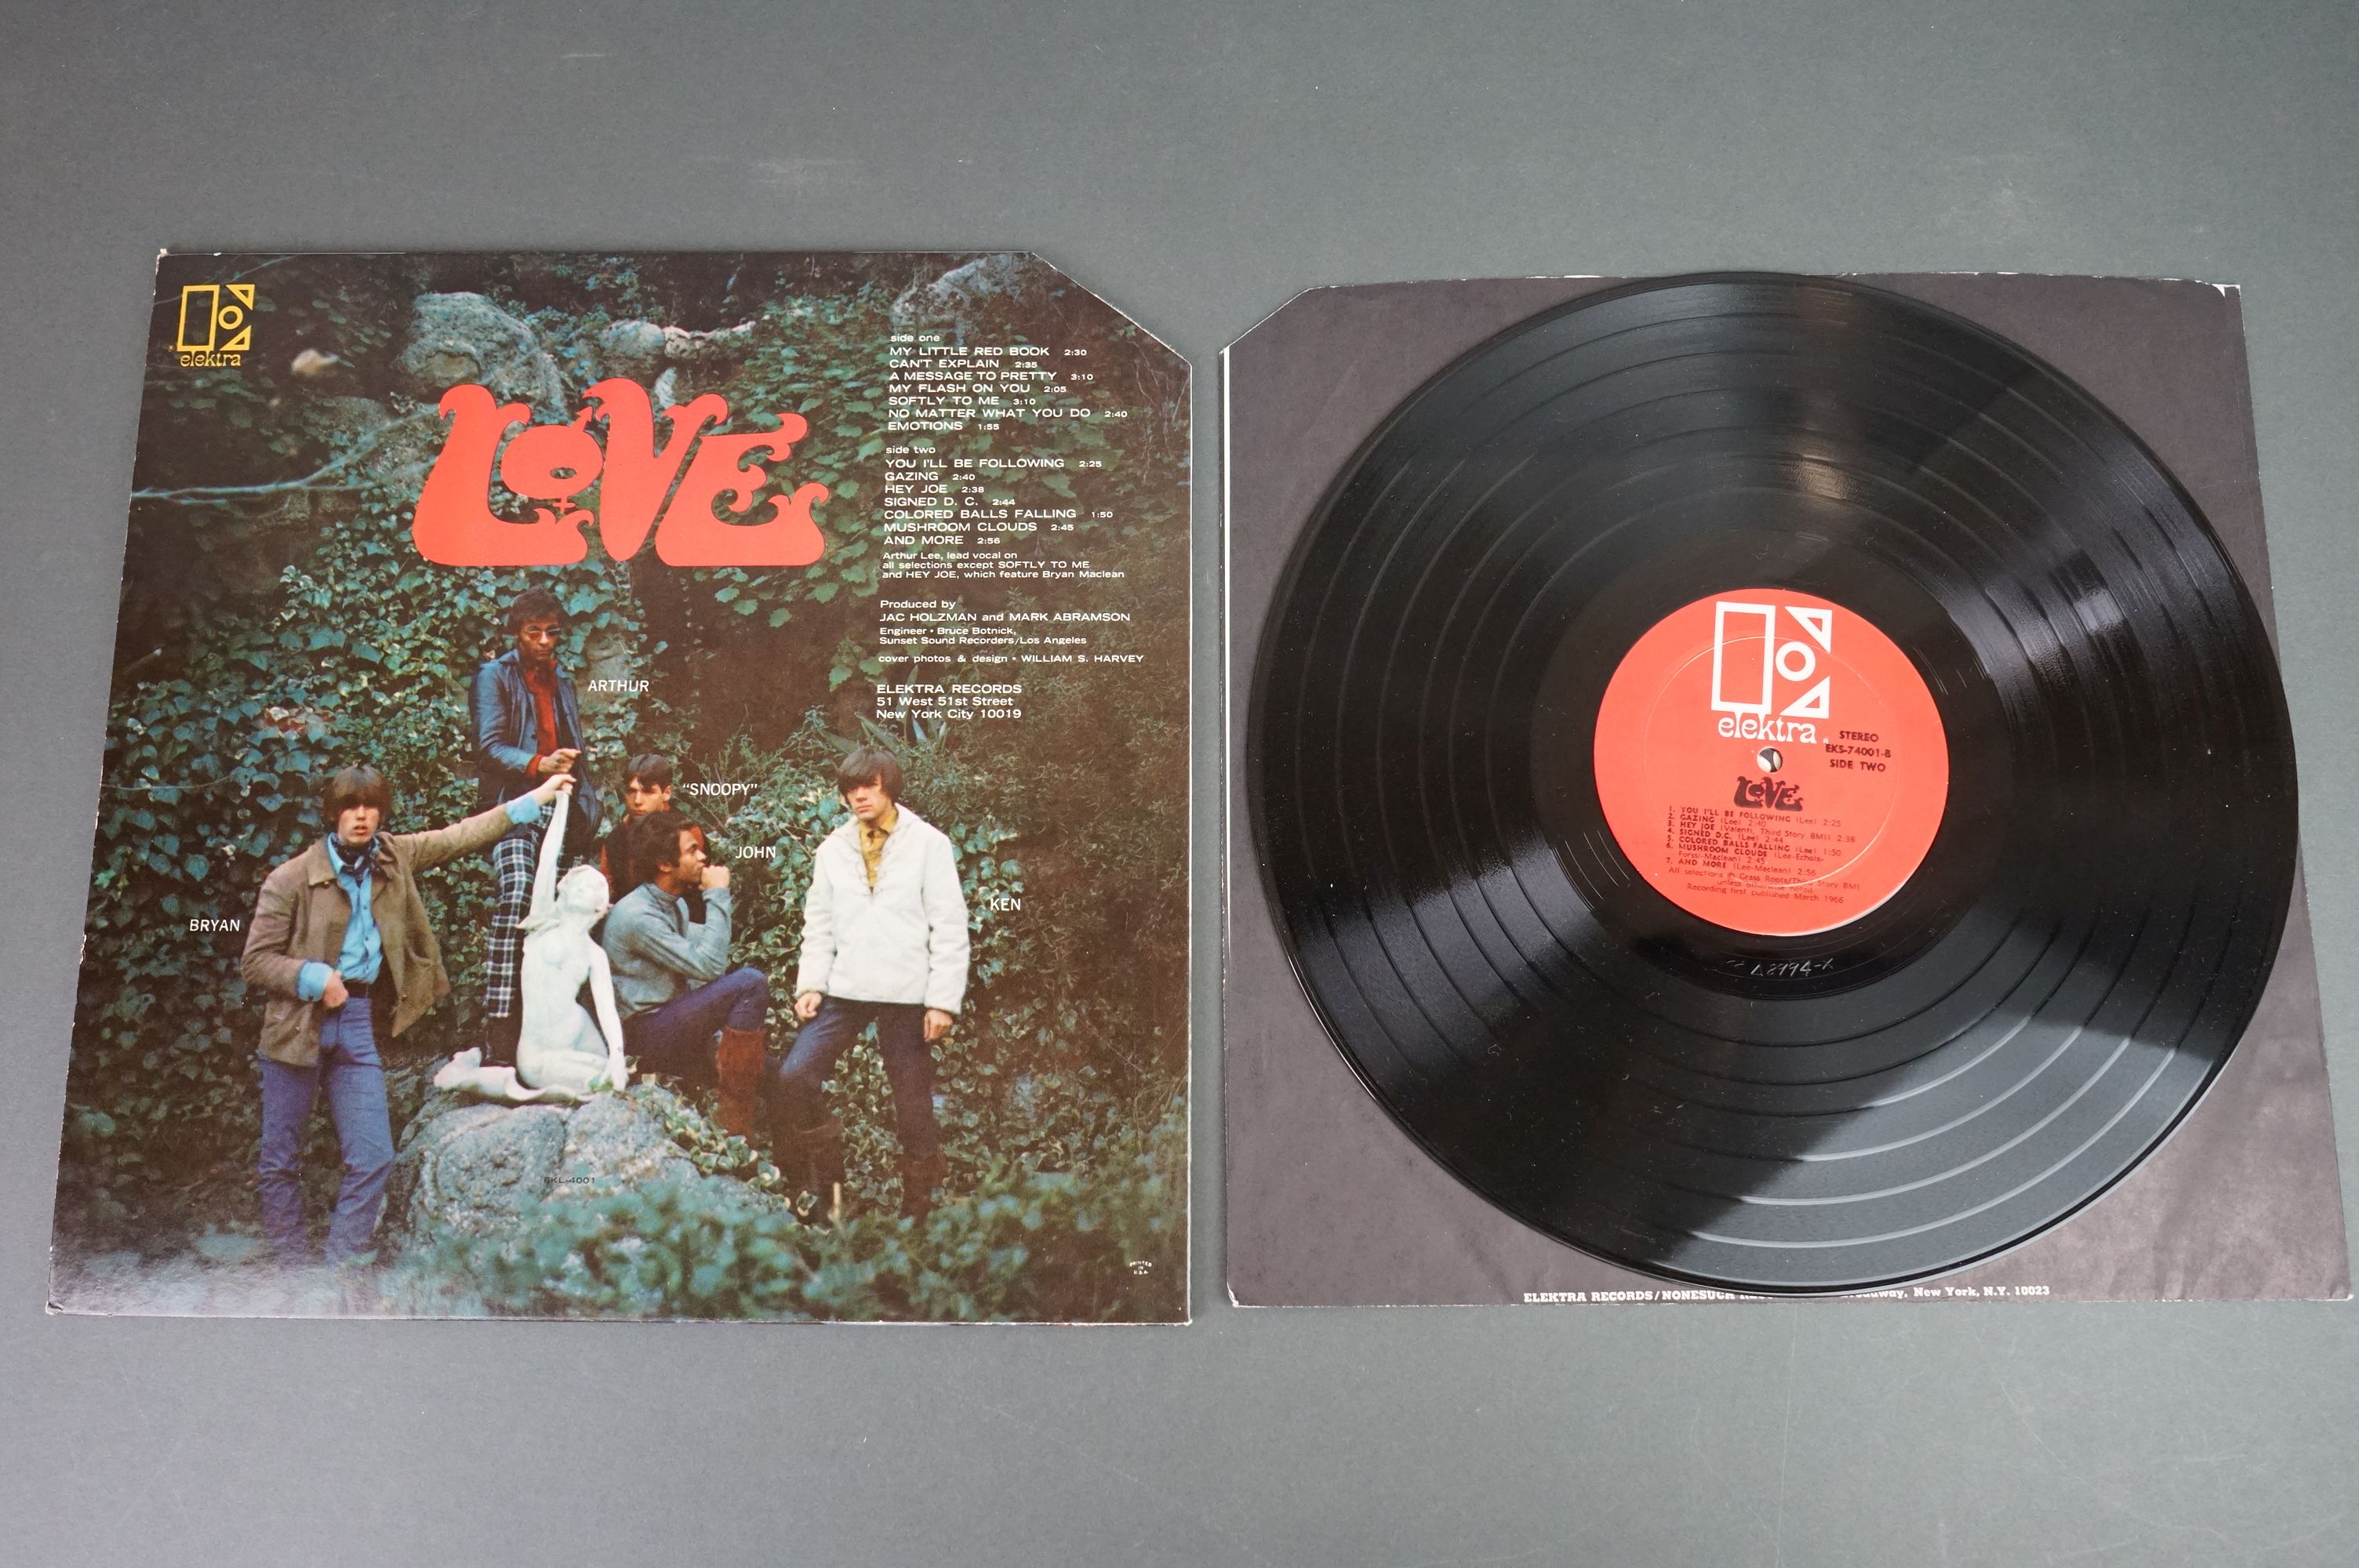 Vinyl - Love self titled EKS74001 orange label, Recording first published March 1966 bottom of - Image 4 of 4